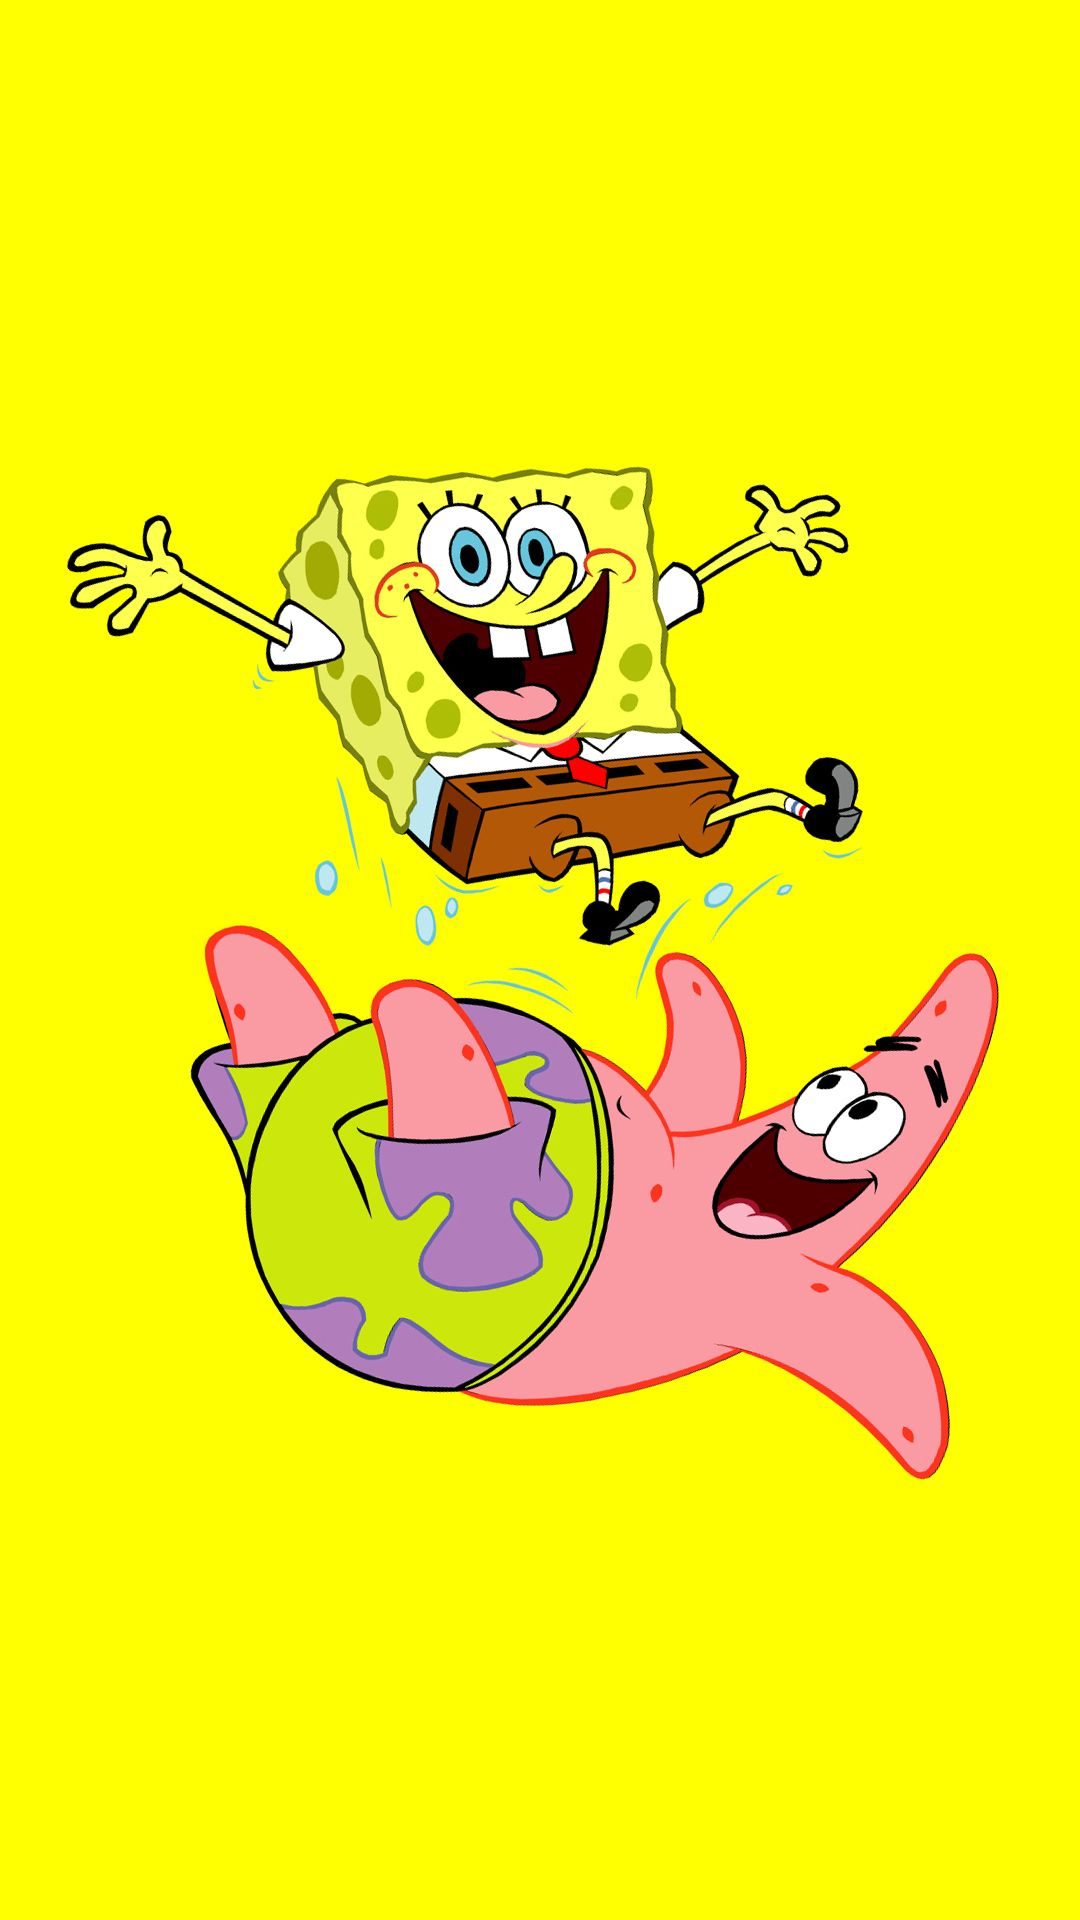 1080x1920 Funny SpongeBob And Patrick | Bob sponja desenho, Personagens do bob esponja, Papeis de parede desenhos